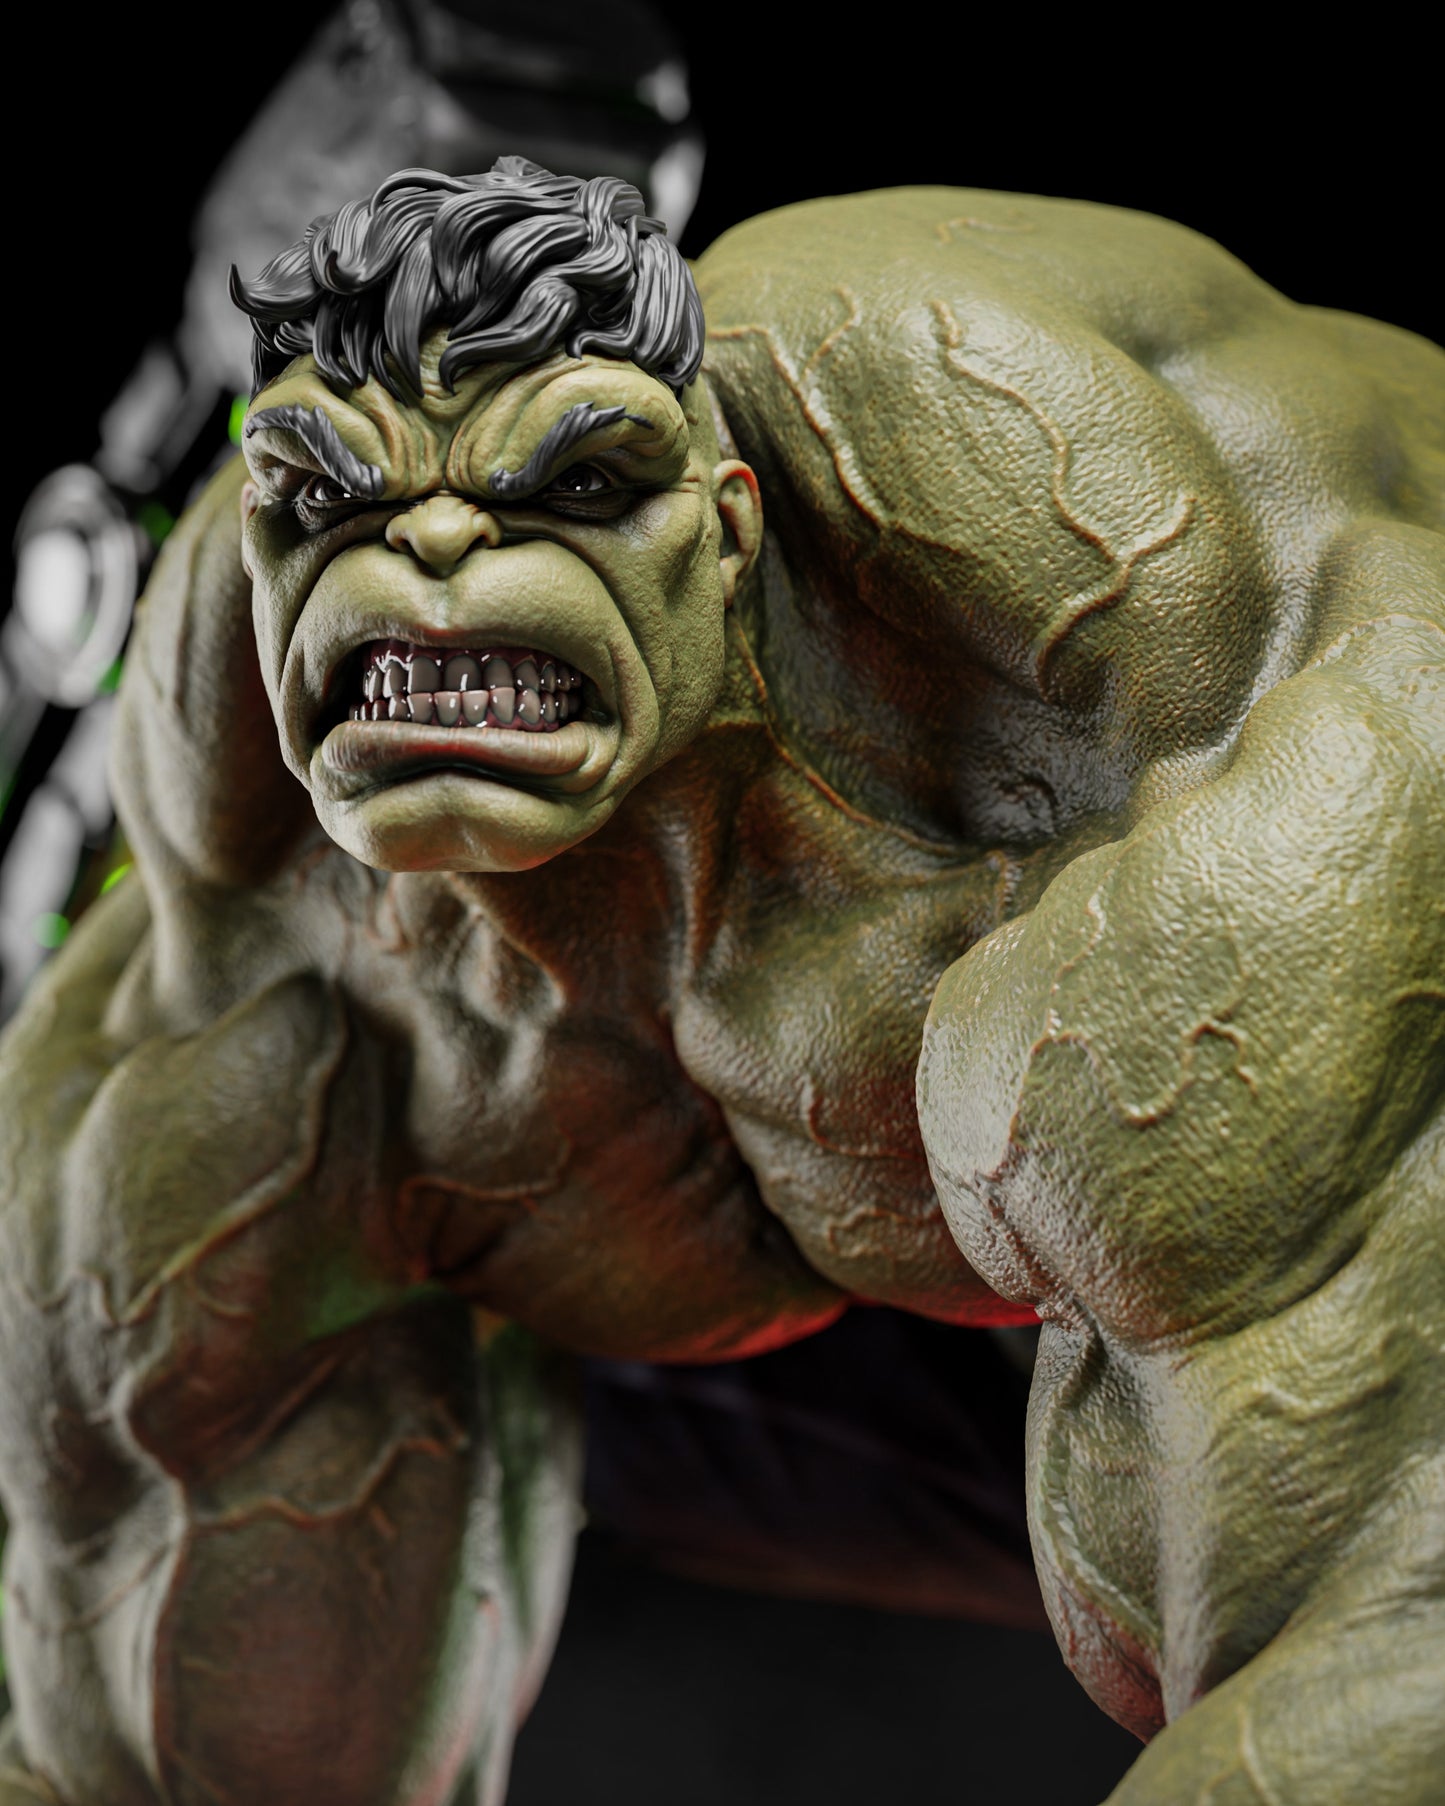 Hulk - Premium Statue Figure Kit